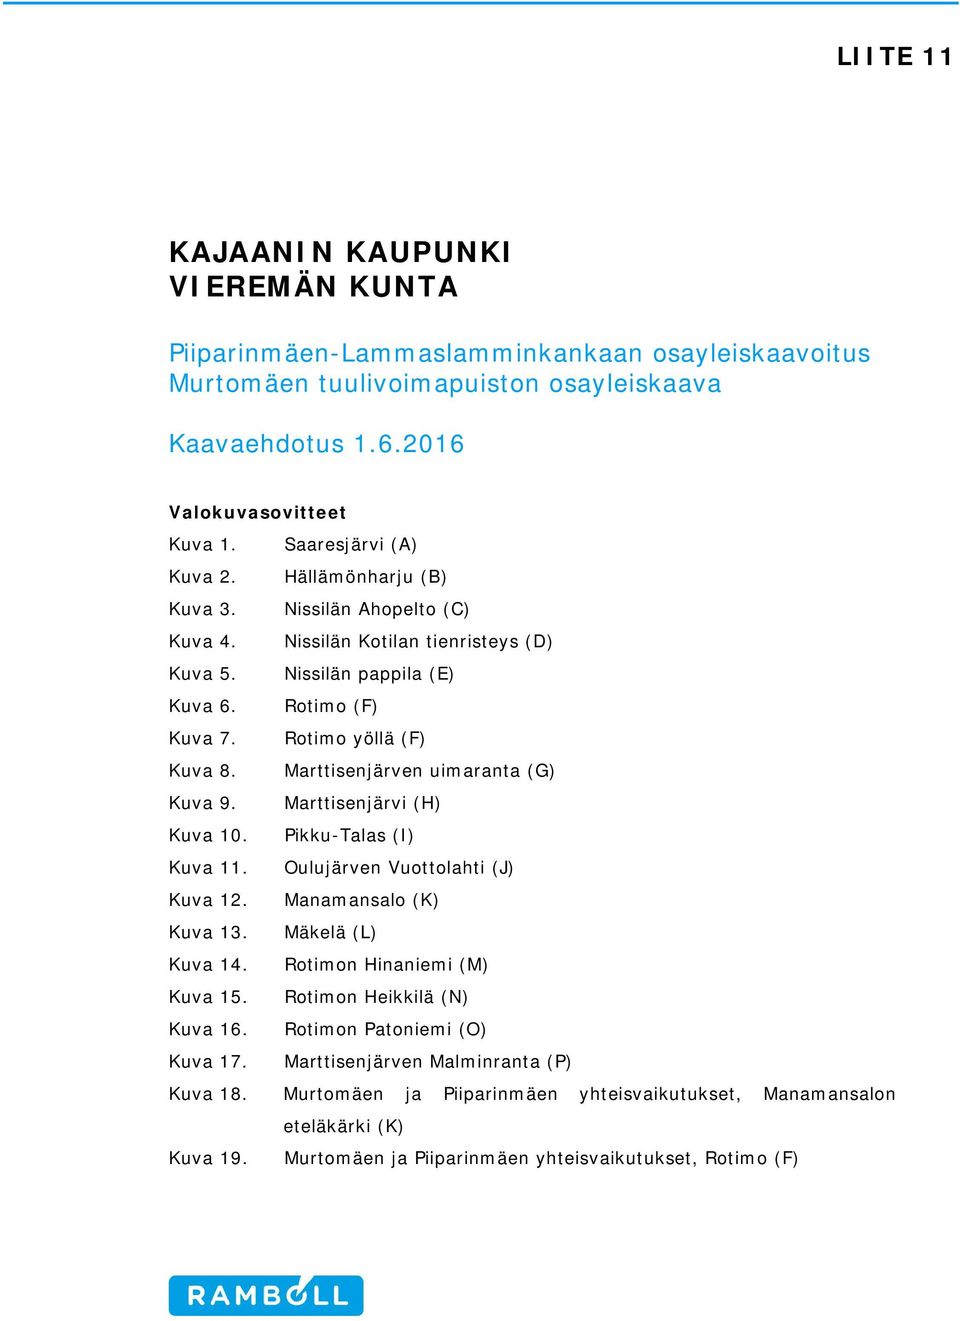 Marttisenjärven uimaranta (G) Kuva 9. Marttisenjärvi (H) Kuva 10. Pikku-Talas (I) Kuva 11. Oulujärven Vuottolahti (J) Kuva 12. Manamansalo (K) Kuva 13. Mäkelä (L) Kuva 14.